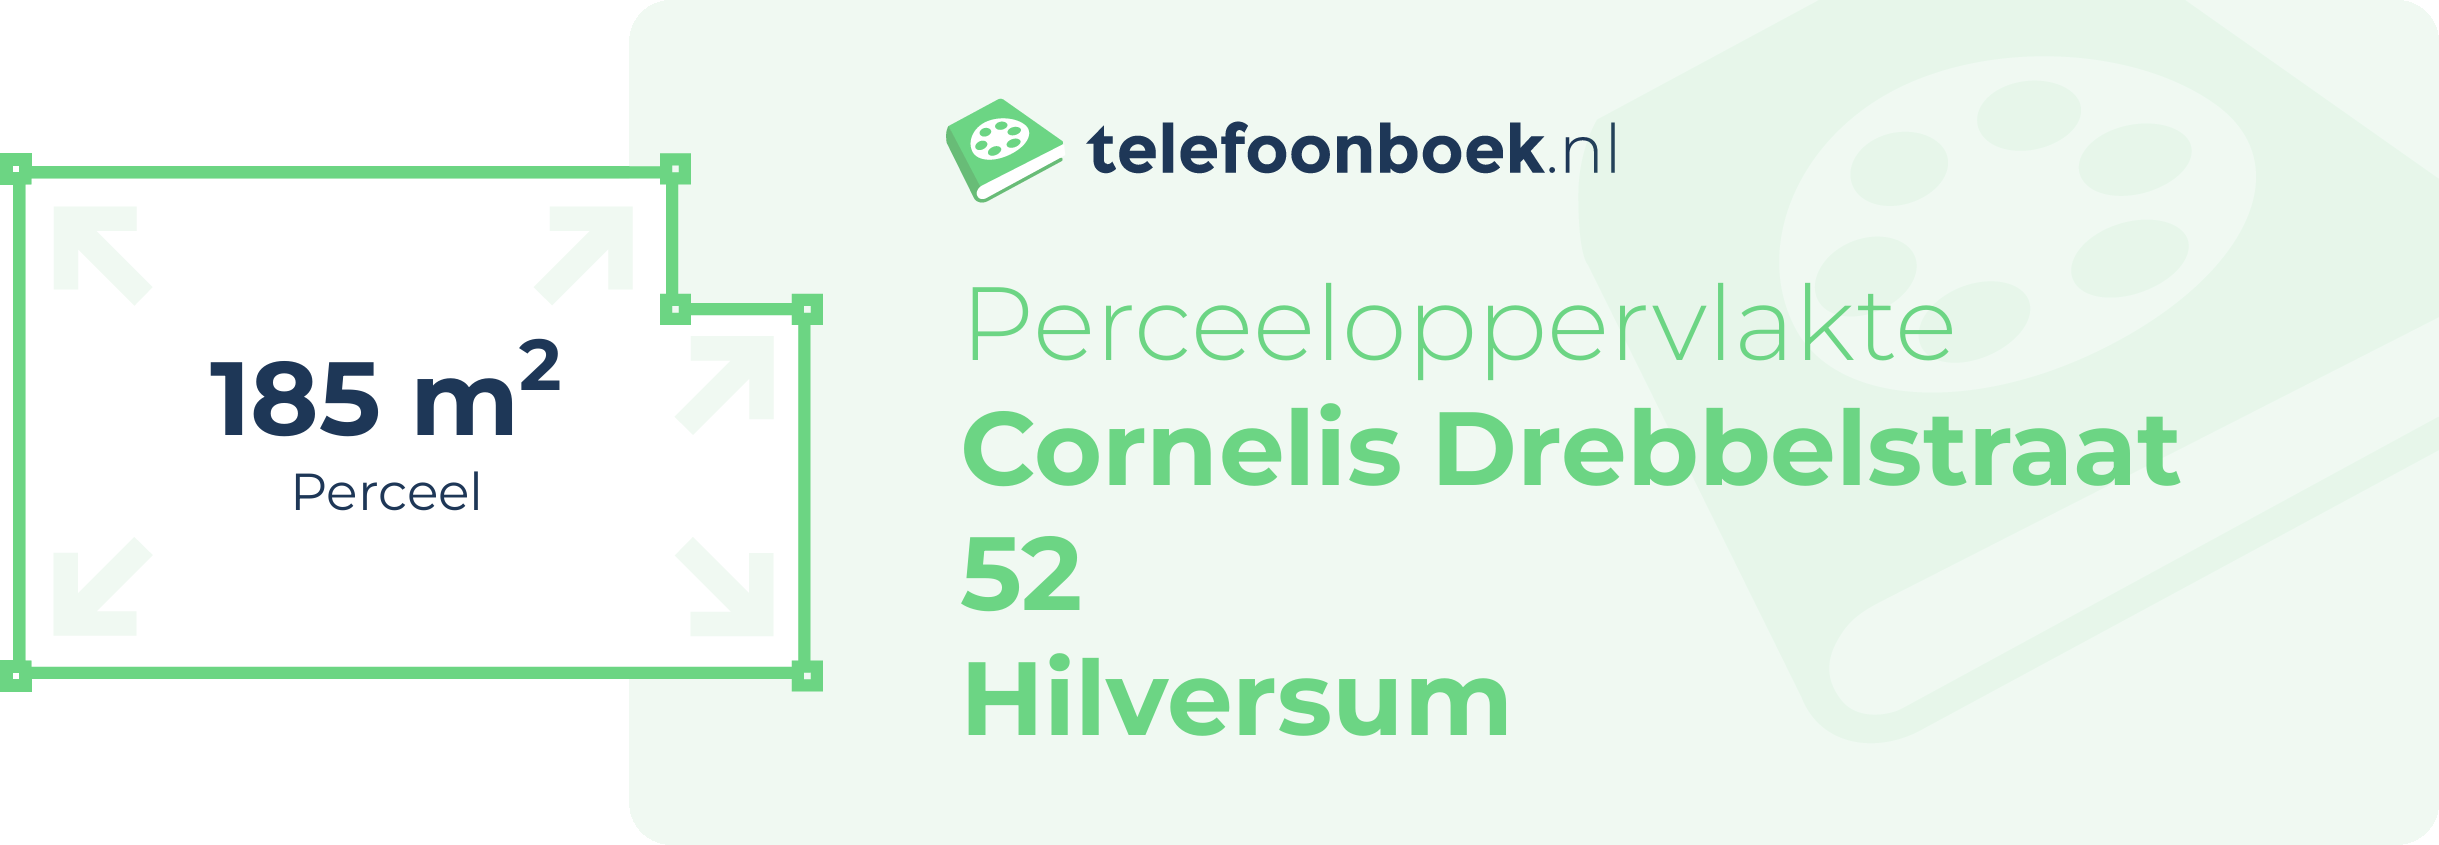 Perceeloppervlakte Cornelis Drebbelstraat 52 Hilversum